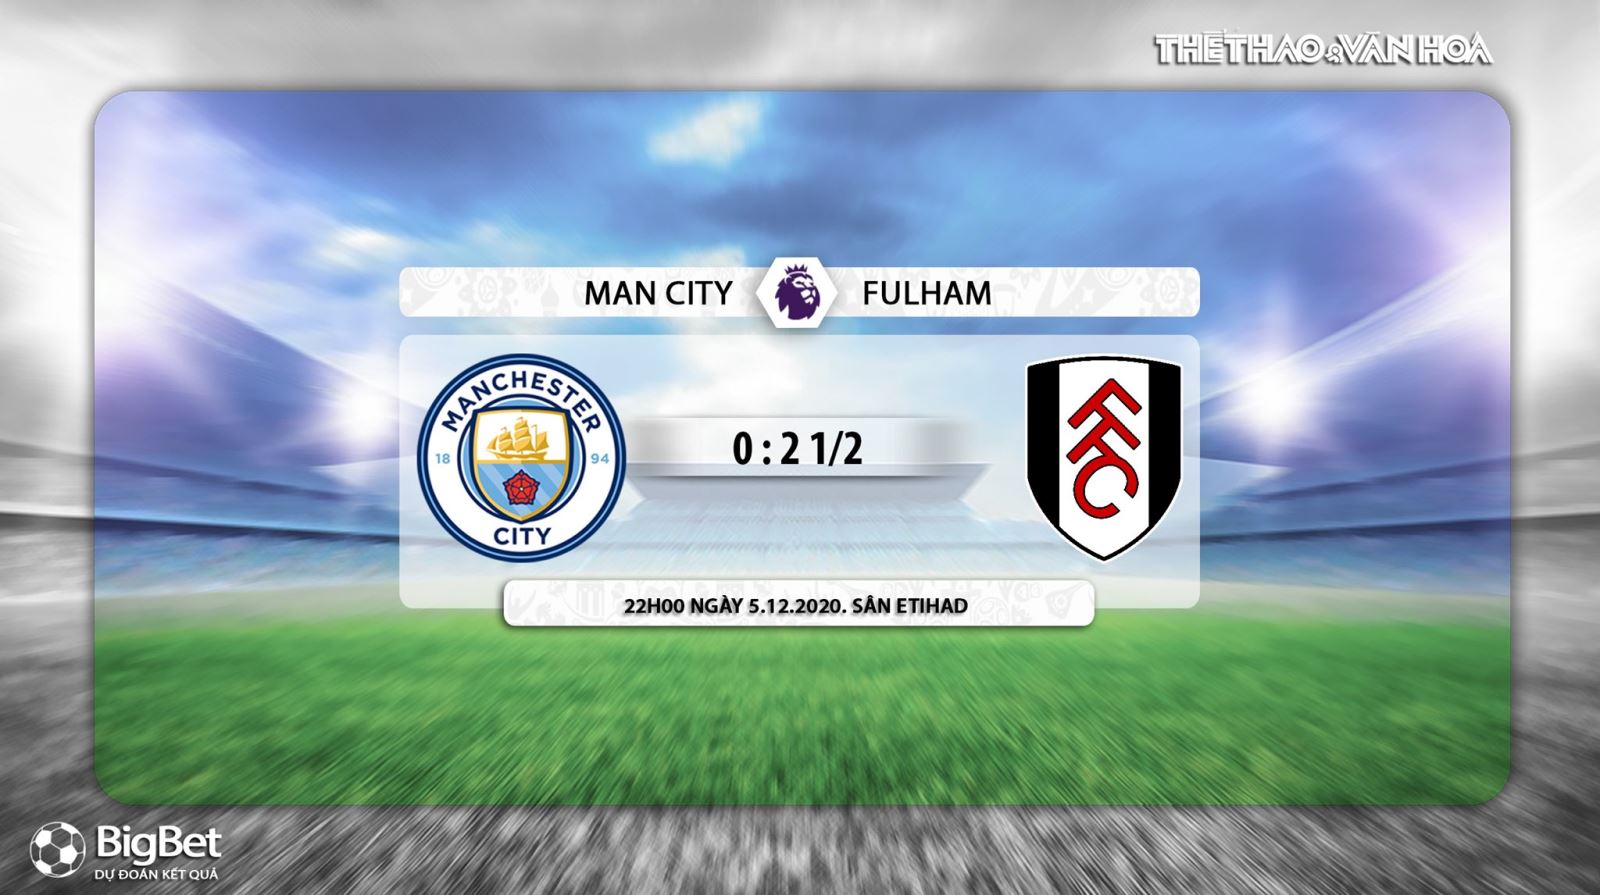 Keo nha cai, nhận định kết quả, Man City Fulham, truc tiep bong da, ngoai hang Anh vòng 10, kèo bóng đá, trực tiếp Man City đấu với Fulham, trực tiếp bóng đá Anh, kèo Man City